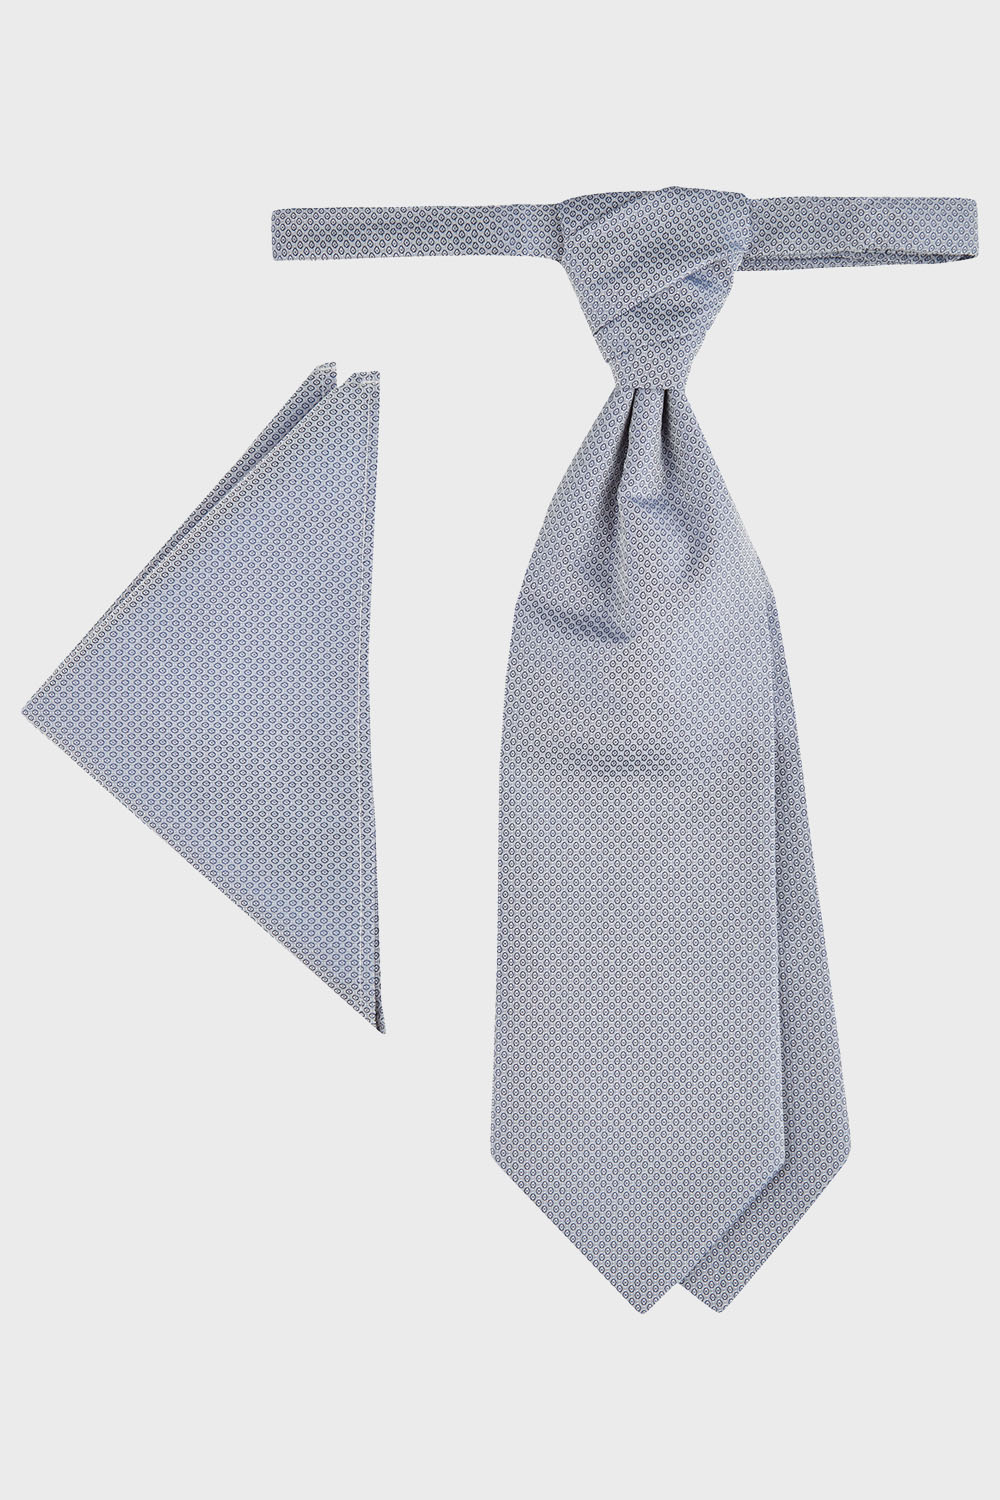 WILVORST szürkéskék francia nyakkendő és díszzsebkendő 467207-37